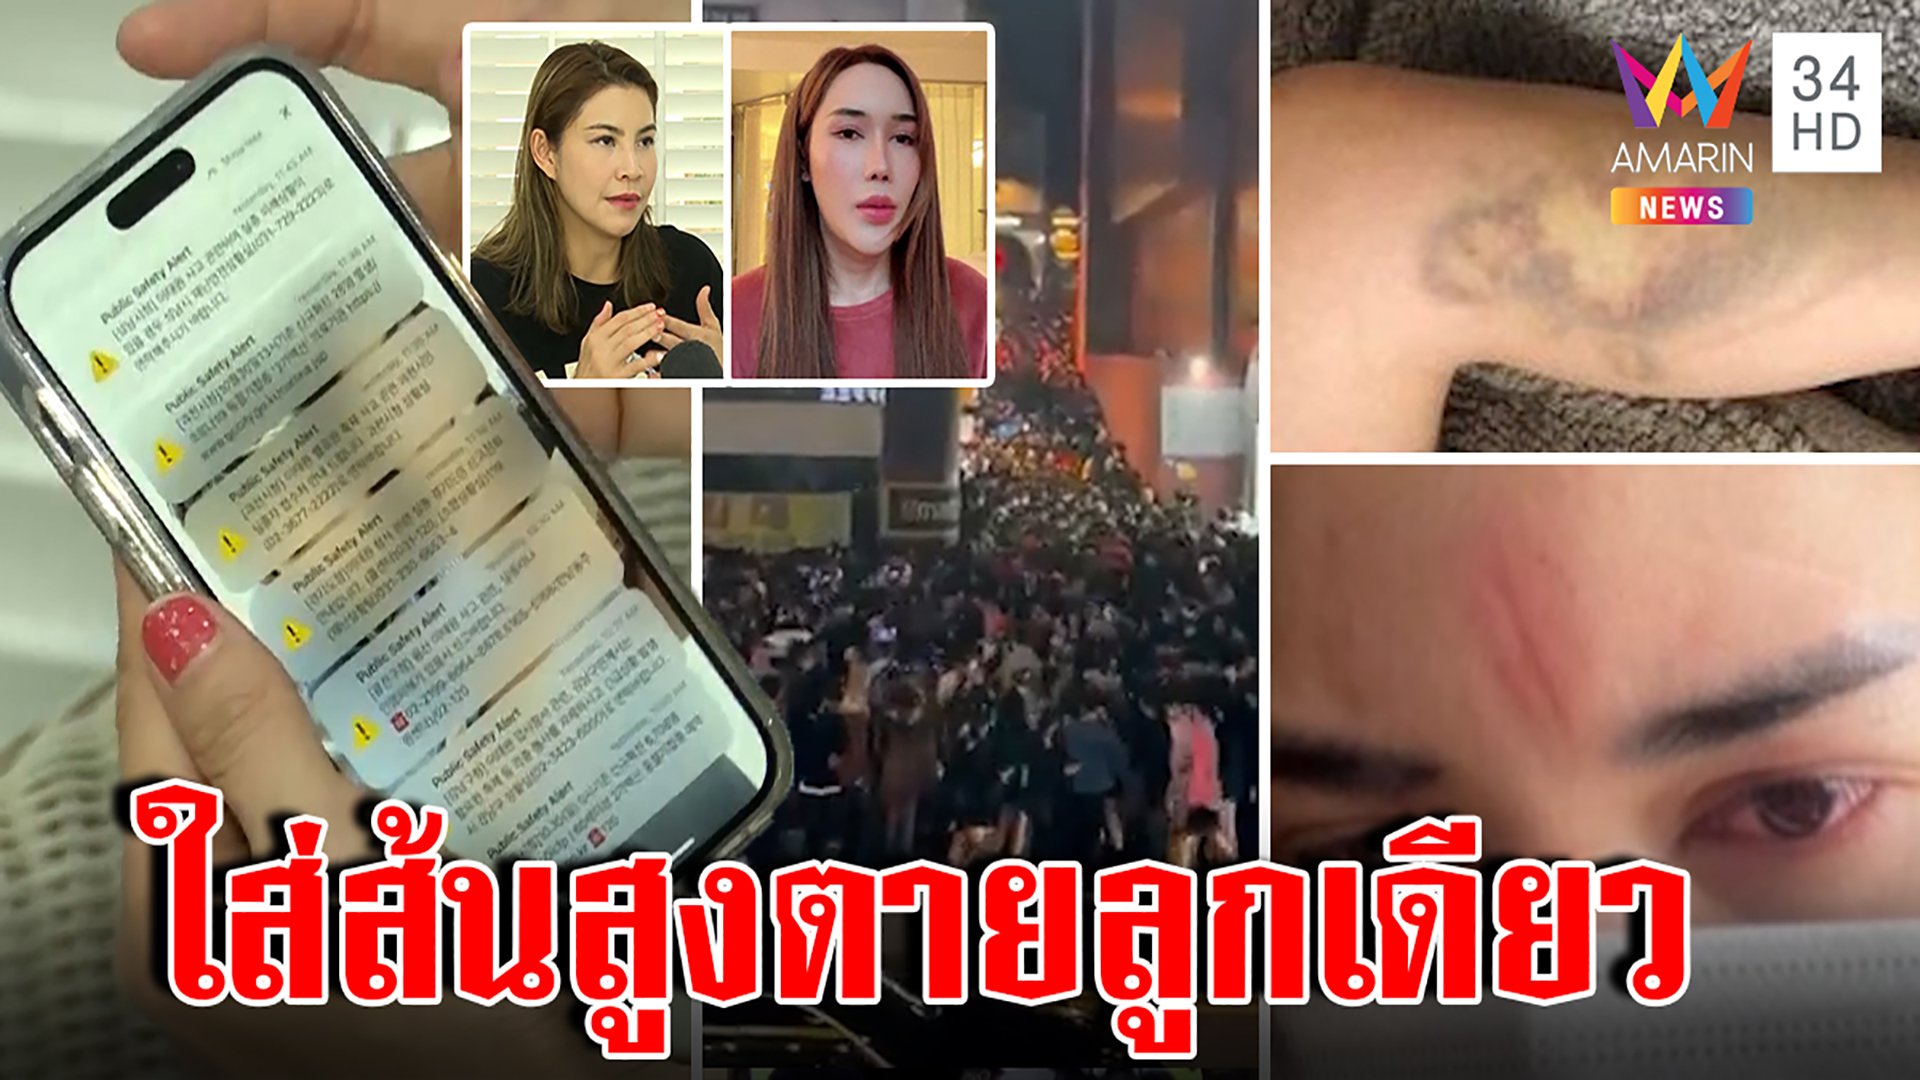 โศกนาฏกรรมช็อกโลก 300 ศพ สาวไทยเที่ยวอิแทวอนทึ่ง SMS -รองเท้าช่วยรอด | ทุบโต๊ะข่าว | 31 ต.ค. 65 | AMARIN TVHD34